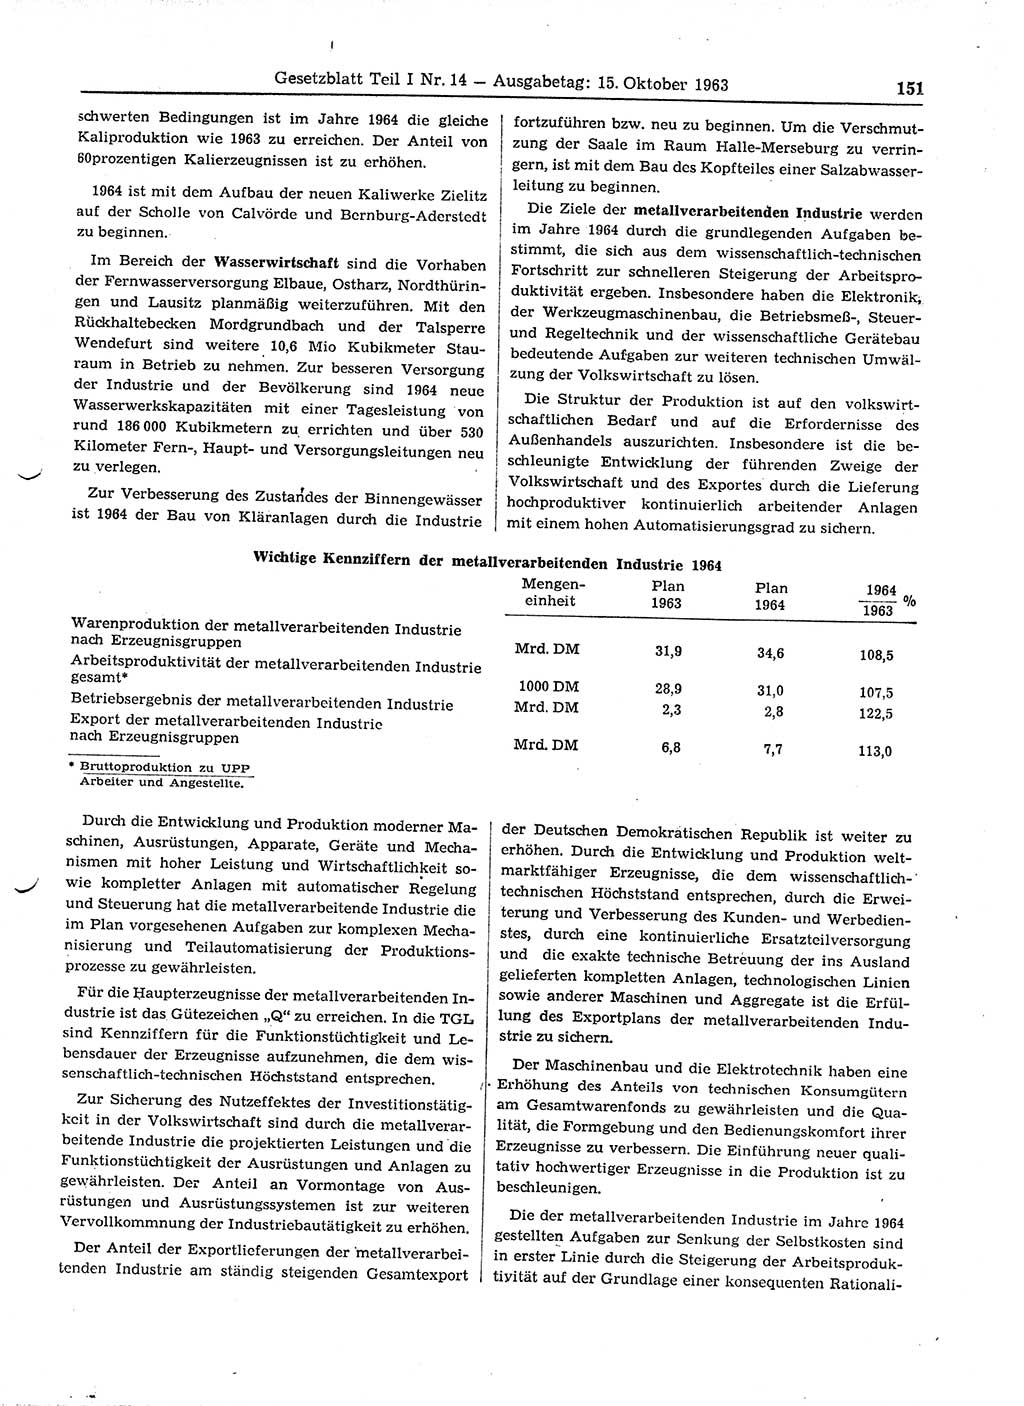 Gesetzblatt (GBl.) der Deutschen Demokratischen Republik (DDR) Teil Ⅰ 1963, Seite 151 (GBl. DDR Ⅰ 1963, S. 151)